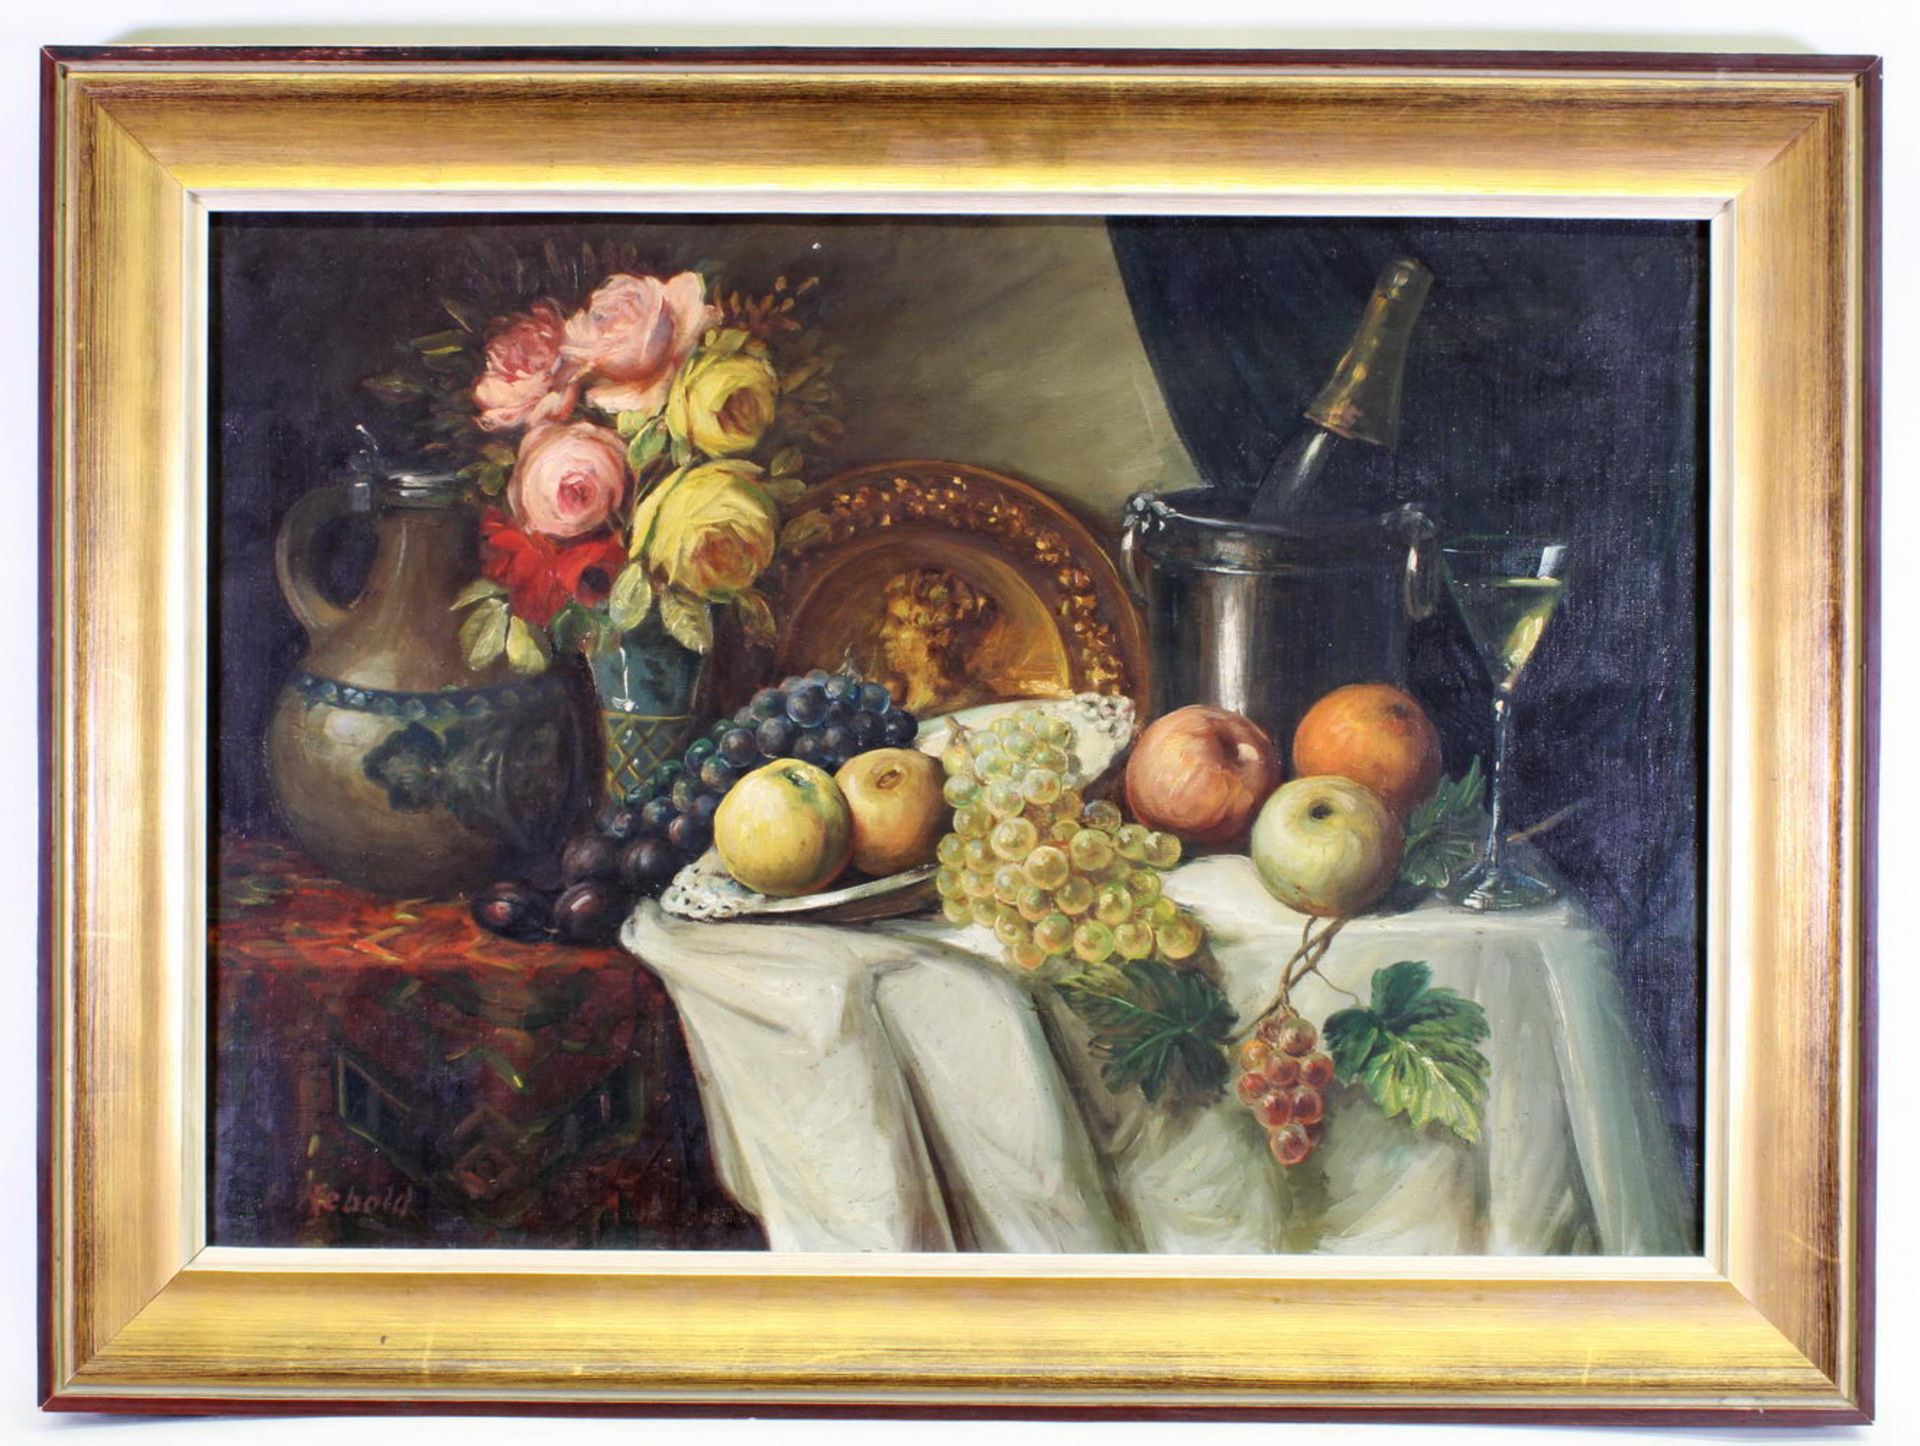 Stilllebenmaler (20. Jh.), "Stillleben mit Blumen", Öl auf Leinwand, signiert links unten B (?) Re - Image 2 of 4